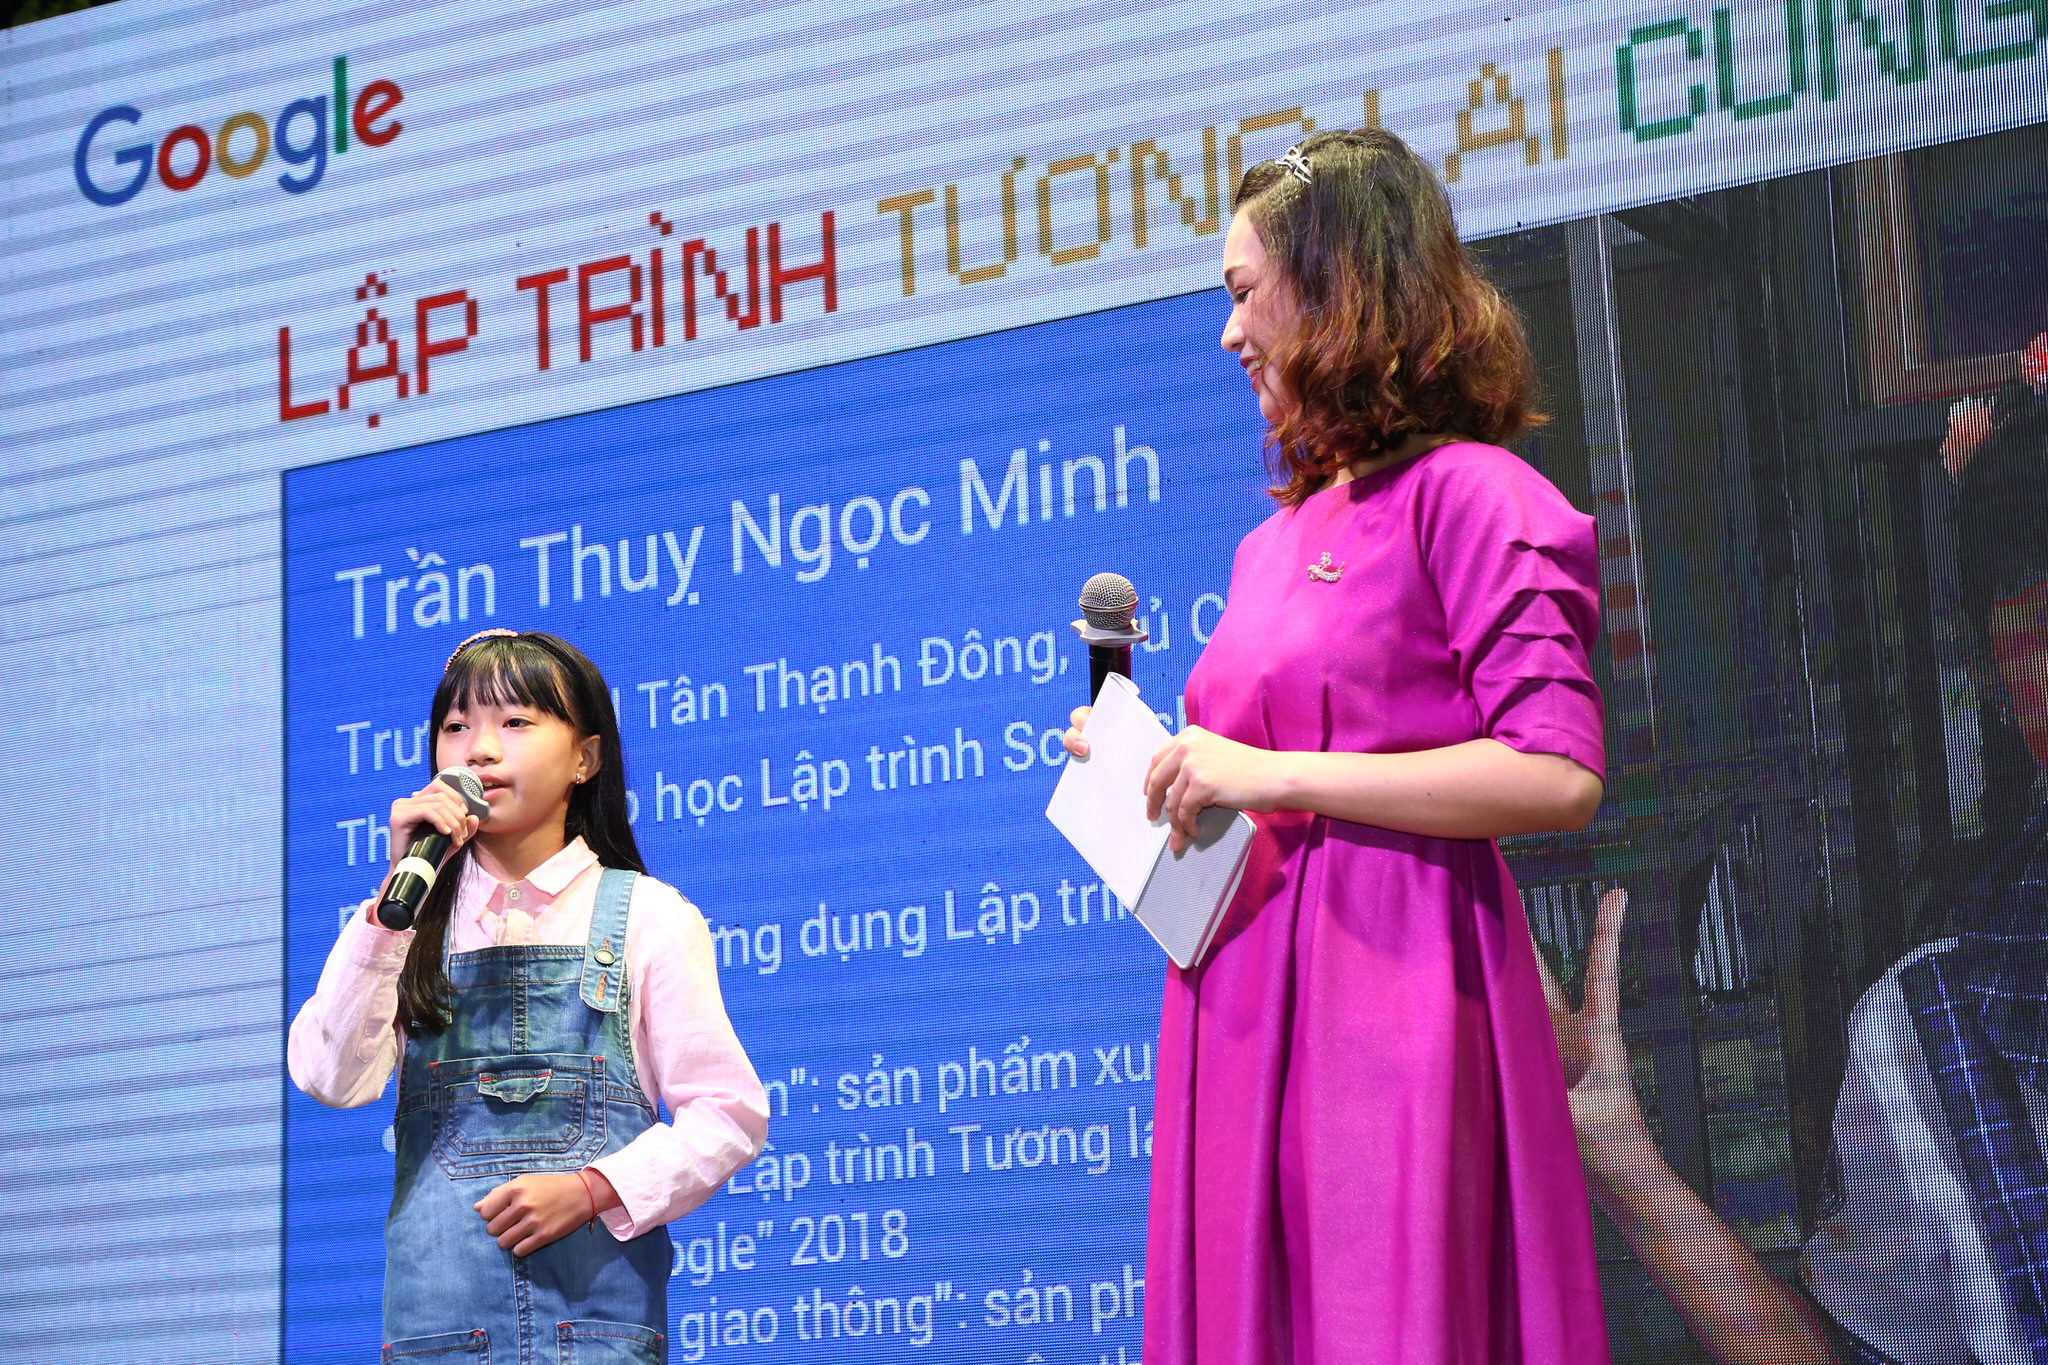 Dự án “Lập trình tương lai cùng Google” học lập trình miễn phí cho 150,000 học sinh, sinh viên Việt Nam